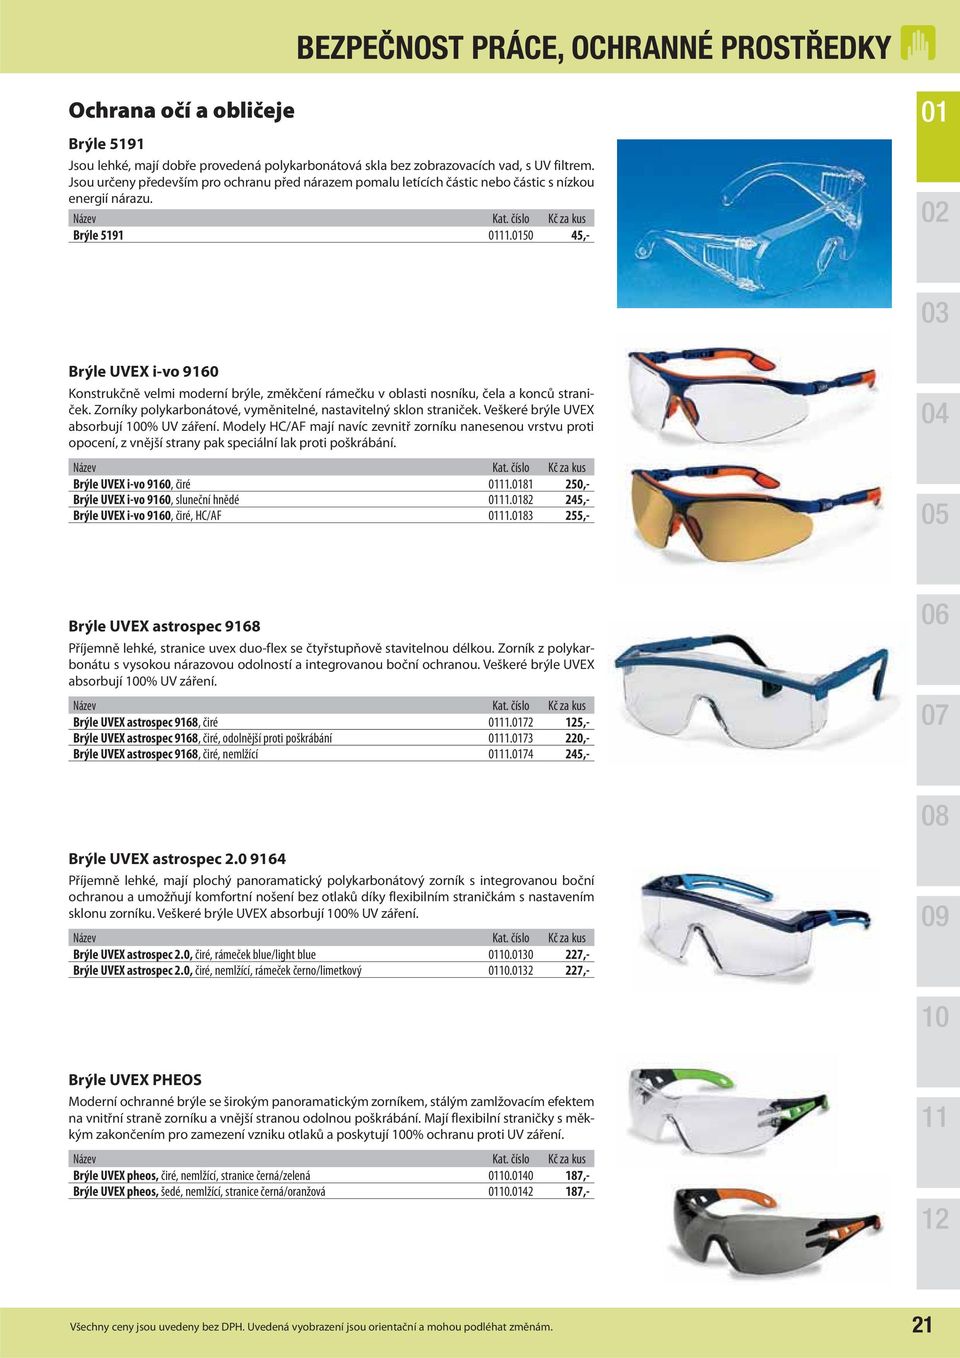 50 45,- Brýle UVEX i-vo 9160 Konstrukčně velmi moderní brýle, změkčení rámečku v oblasti nosníku, čela a konců straniček. Zorníky polykarbonátové, vyměnitelné, nastavitelný sklon straniček.